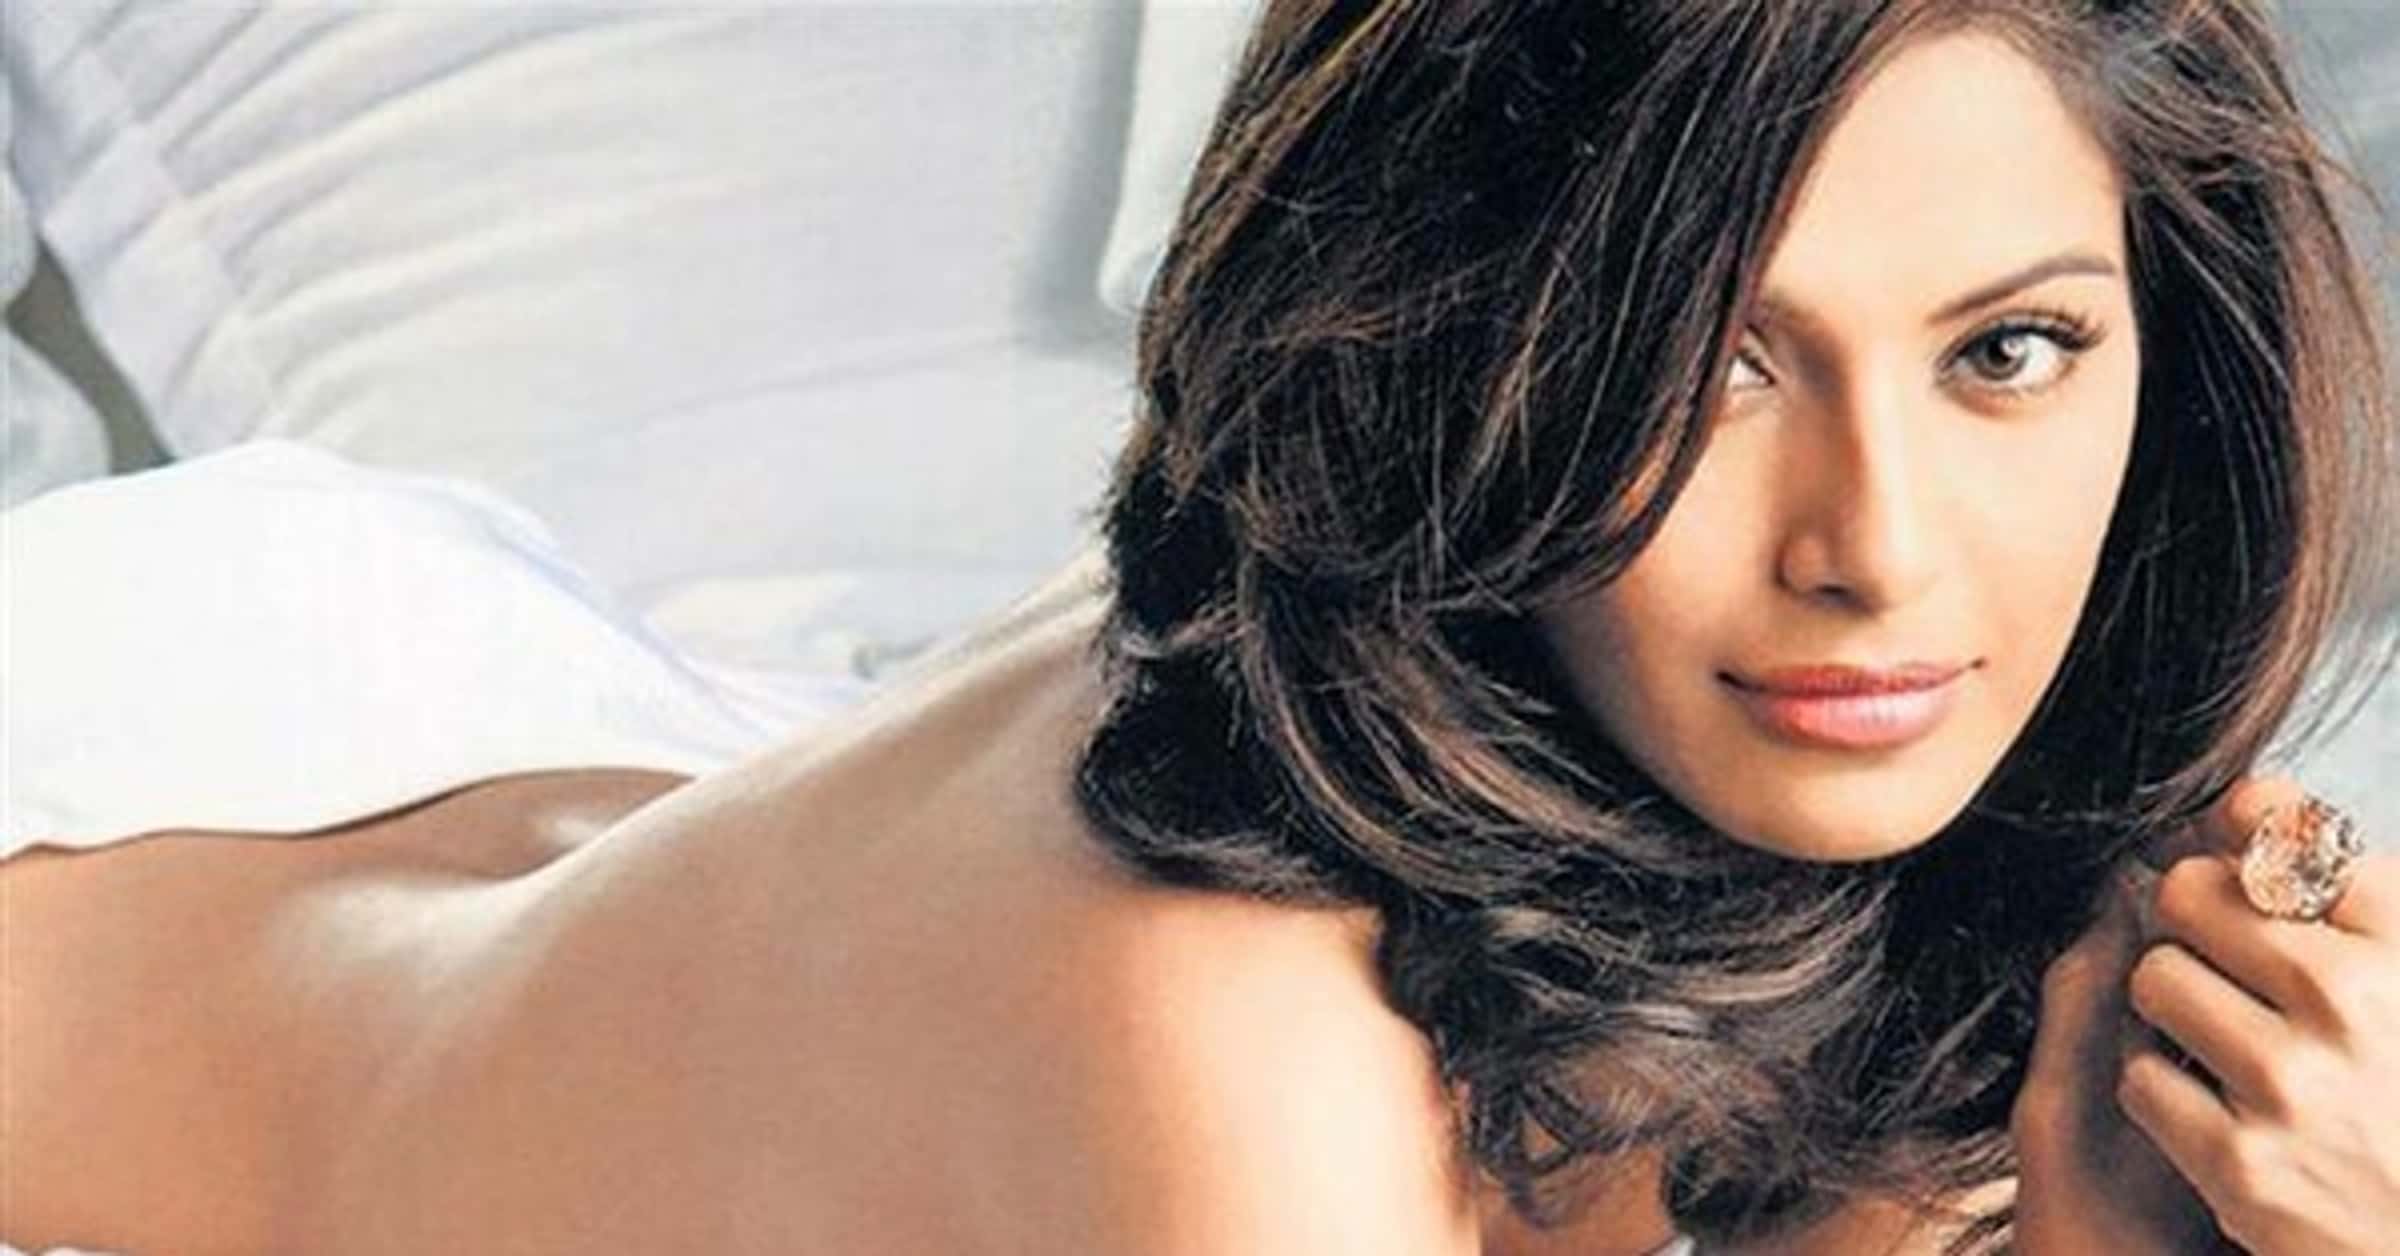 2400px x 1440px - Sexy Hindu Women | Hot Hindus Under 40